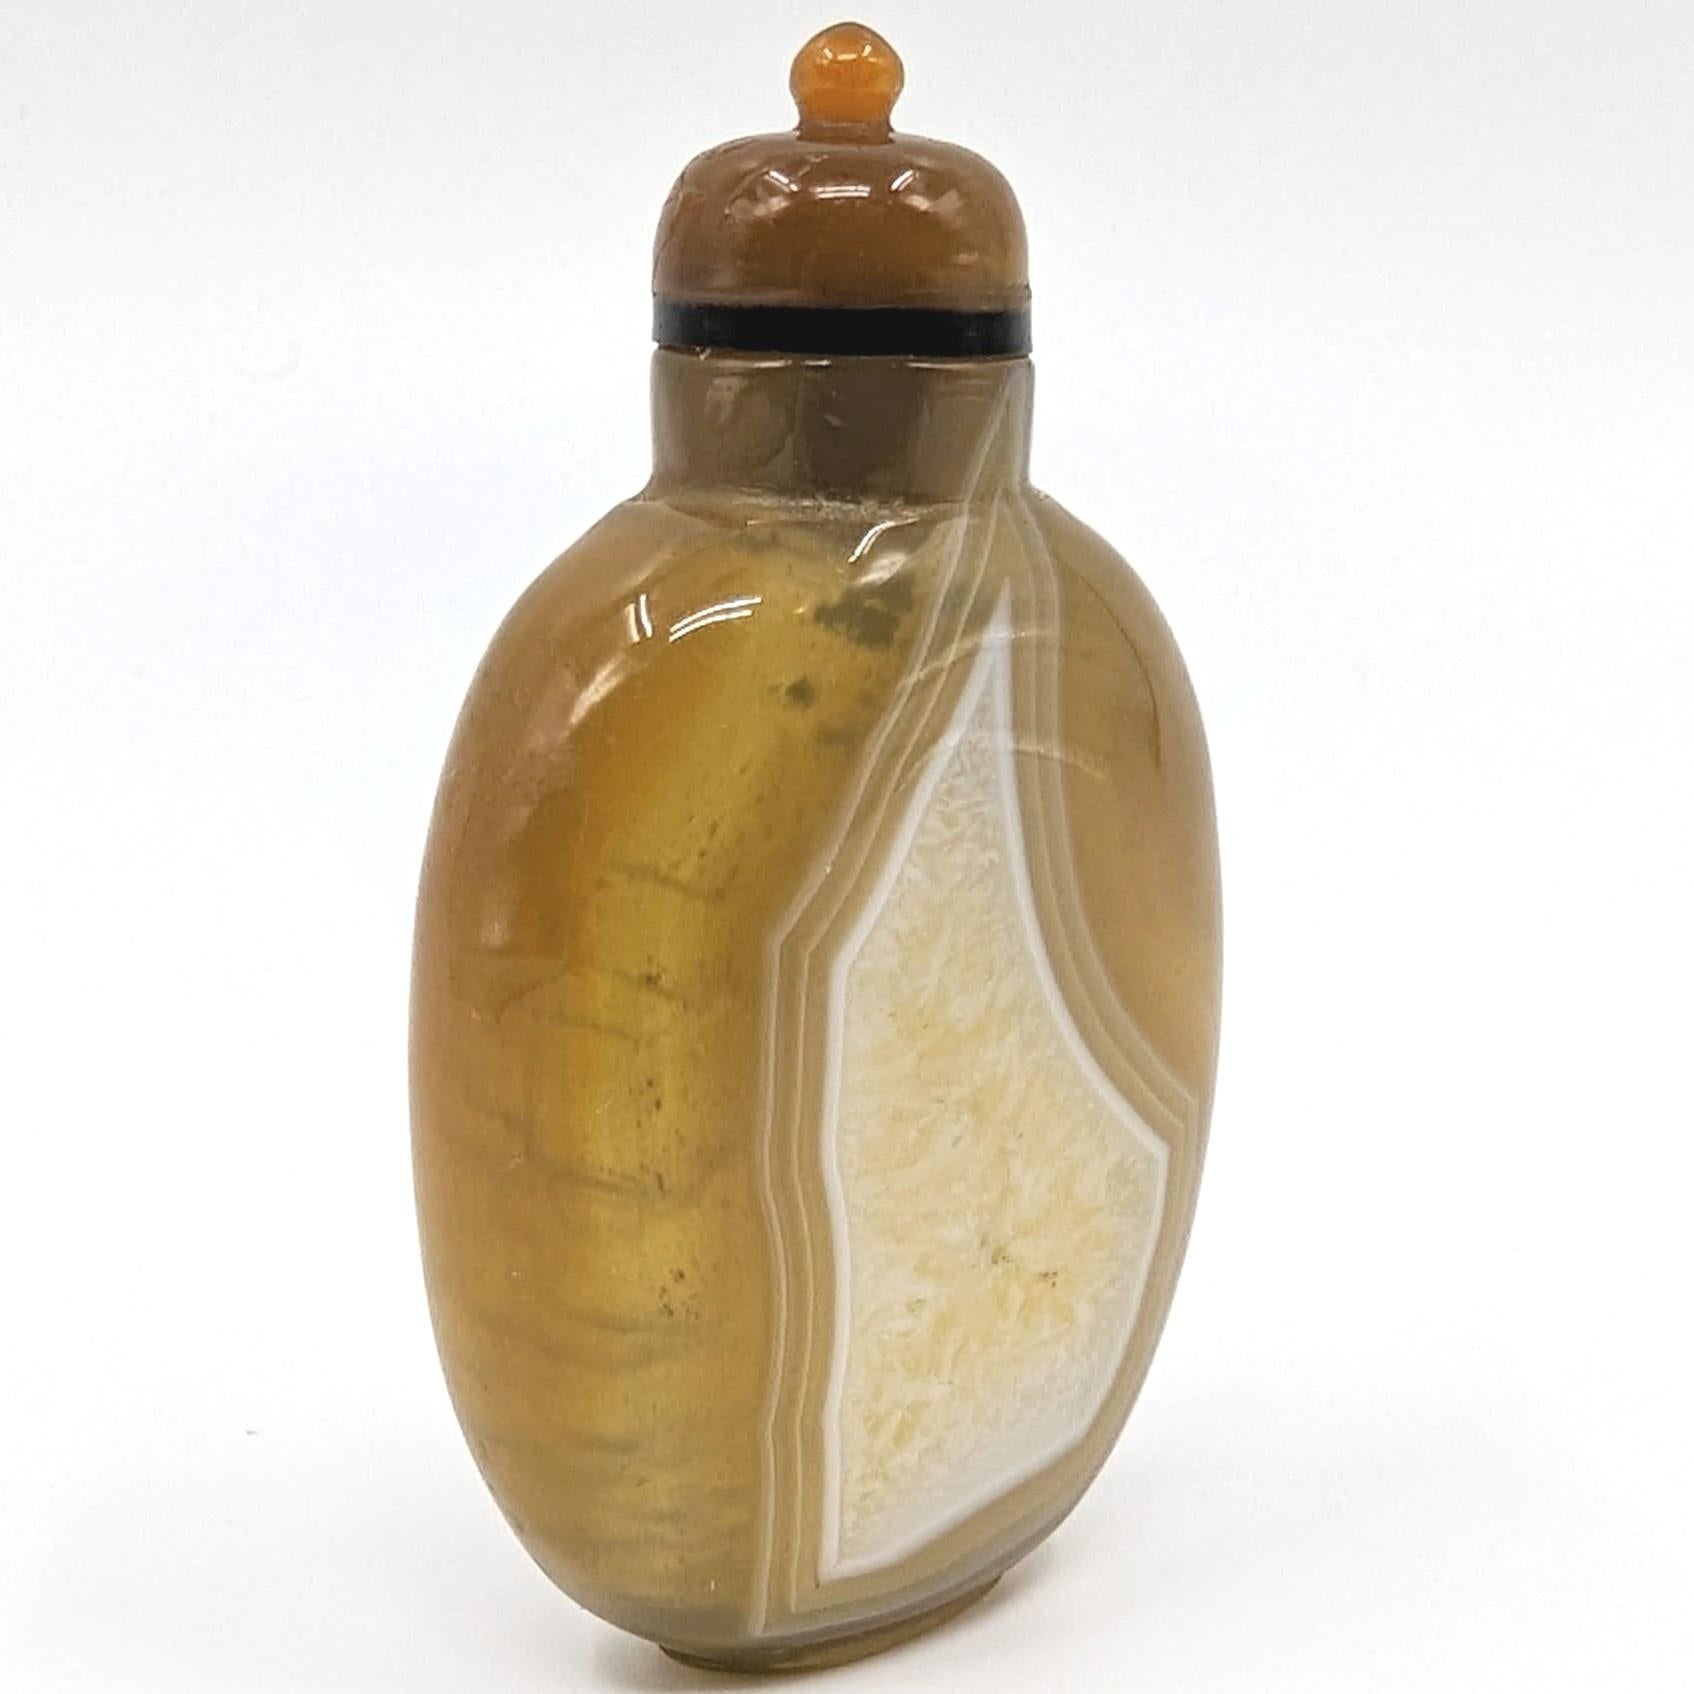 Antike chinesische Schnupftabakflasche aus Chalcedon-Achat, gut ausgehöhlt und auf einem fein geschnitzten Fußring stehend, mit einem geschnitzten Achatstopfen 

Ende 19. Jahrhundert, Qing-Dynastie